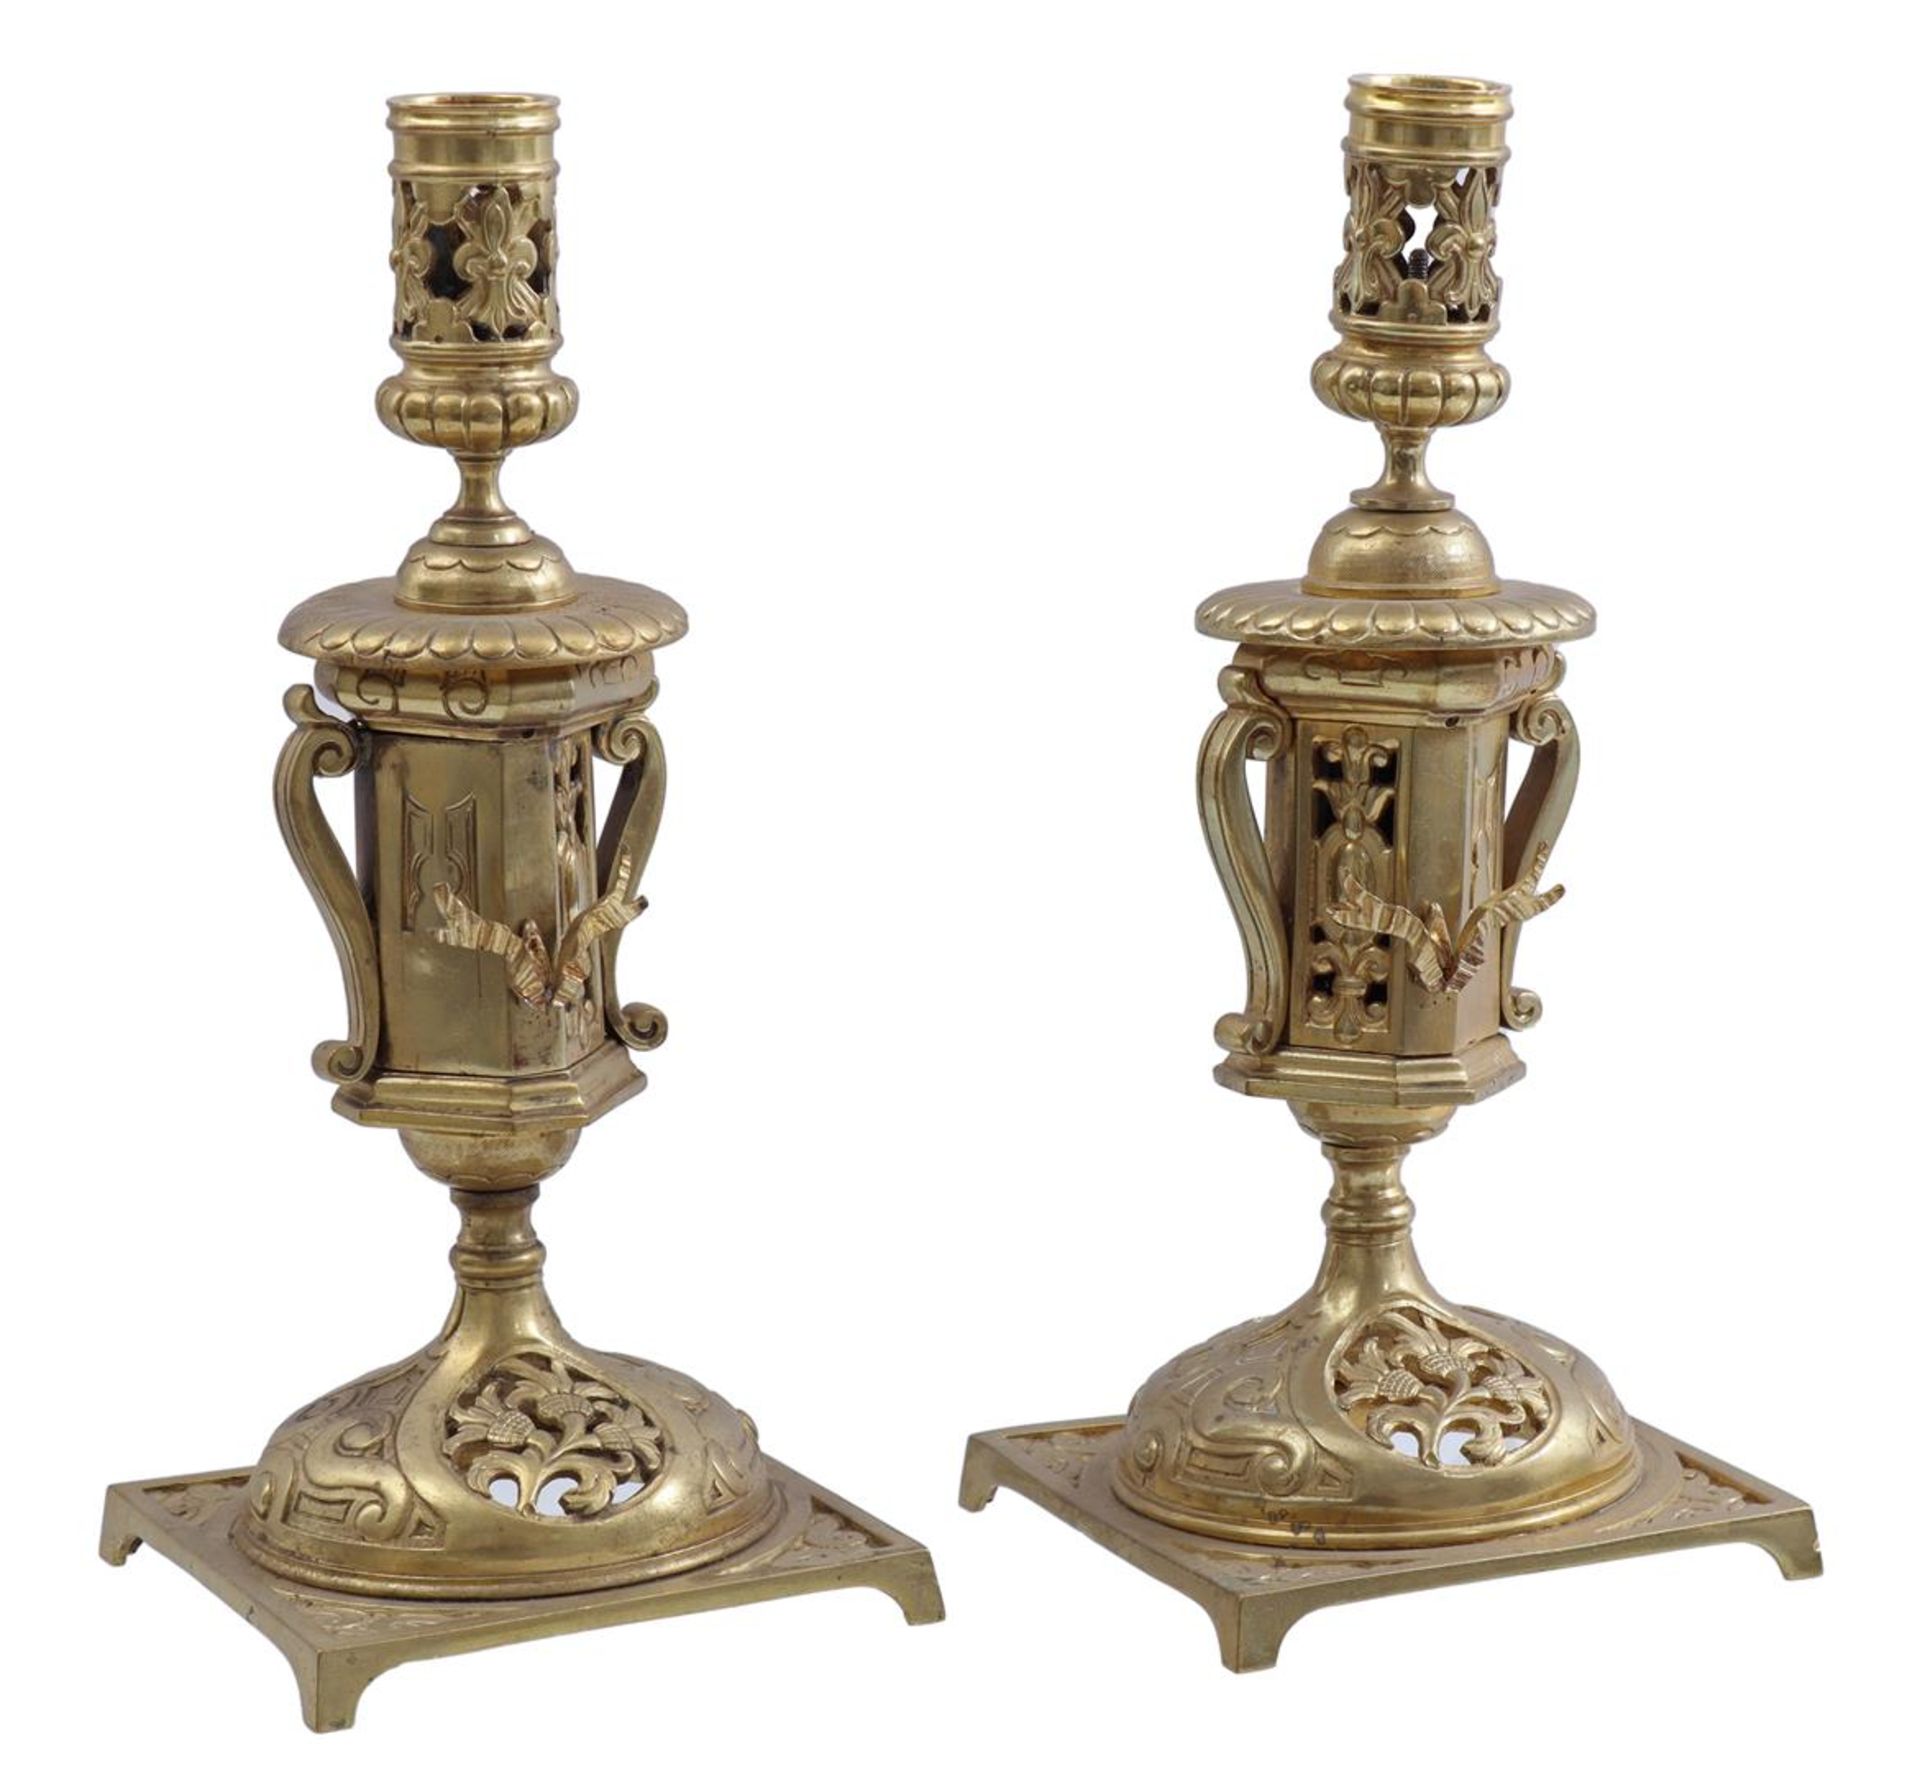 2 brass table candlesticks